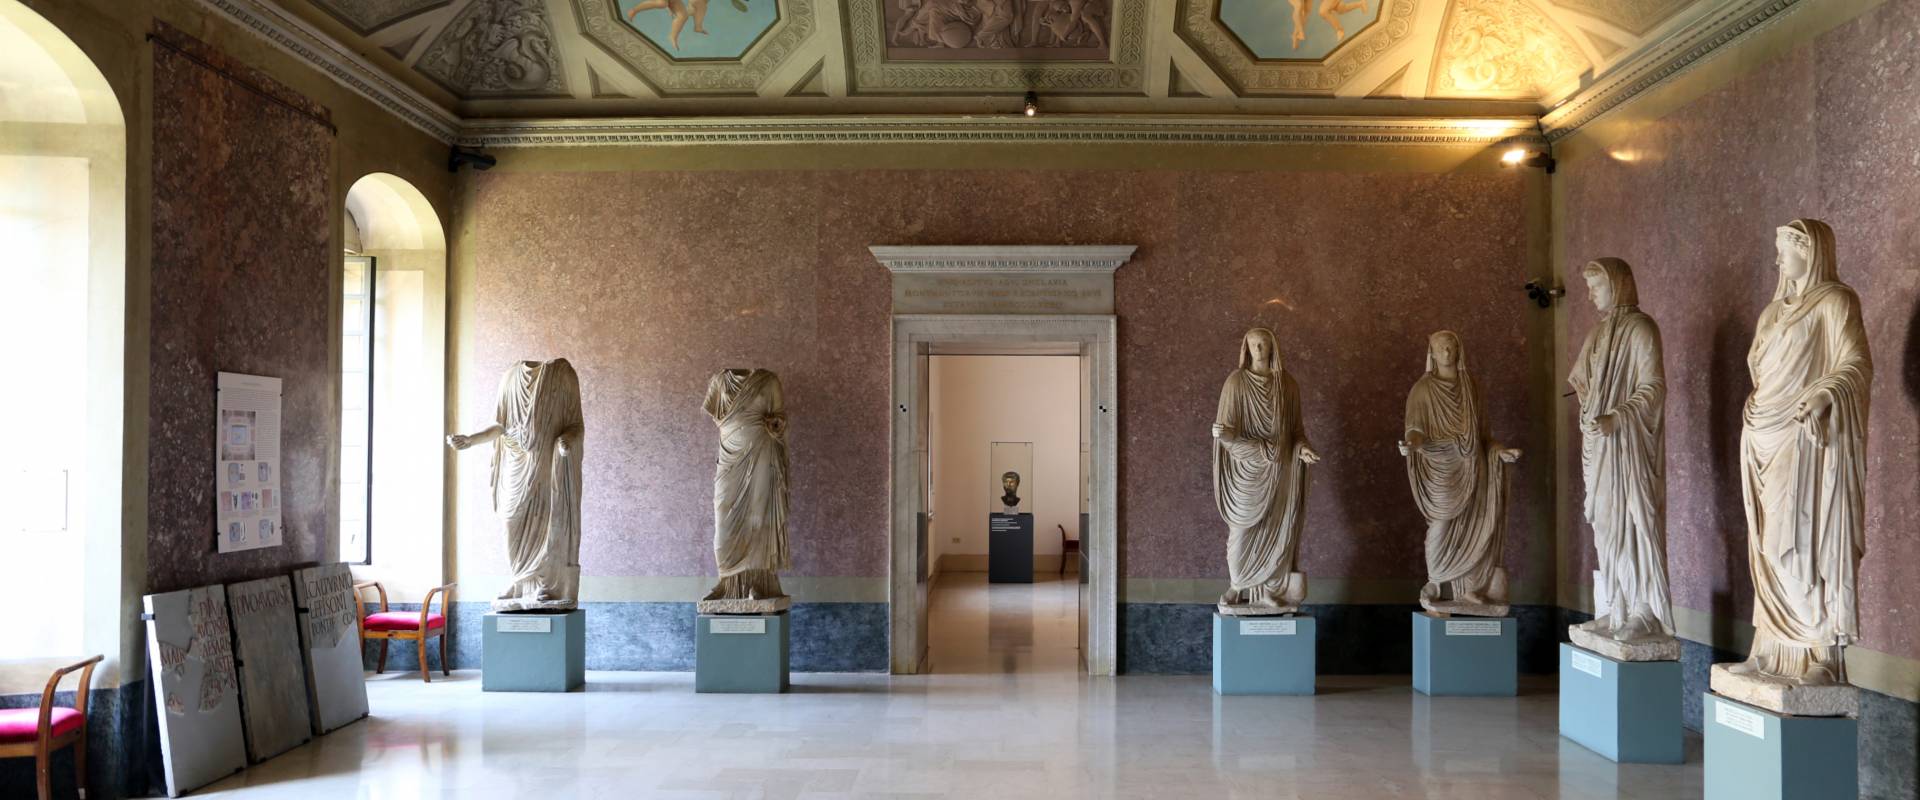 Parma, museo archeologico nazionale, una sala 01 foto di Sailko